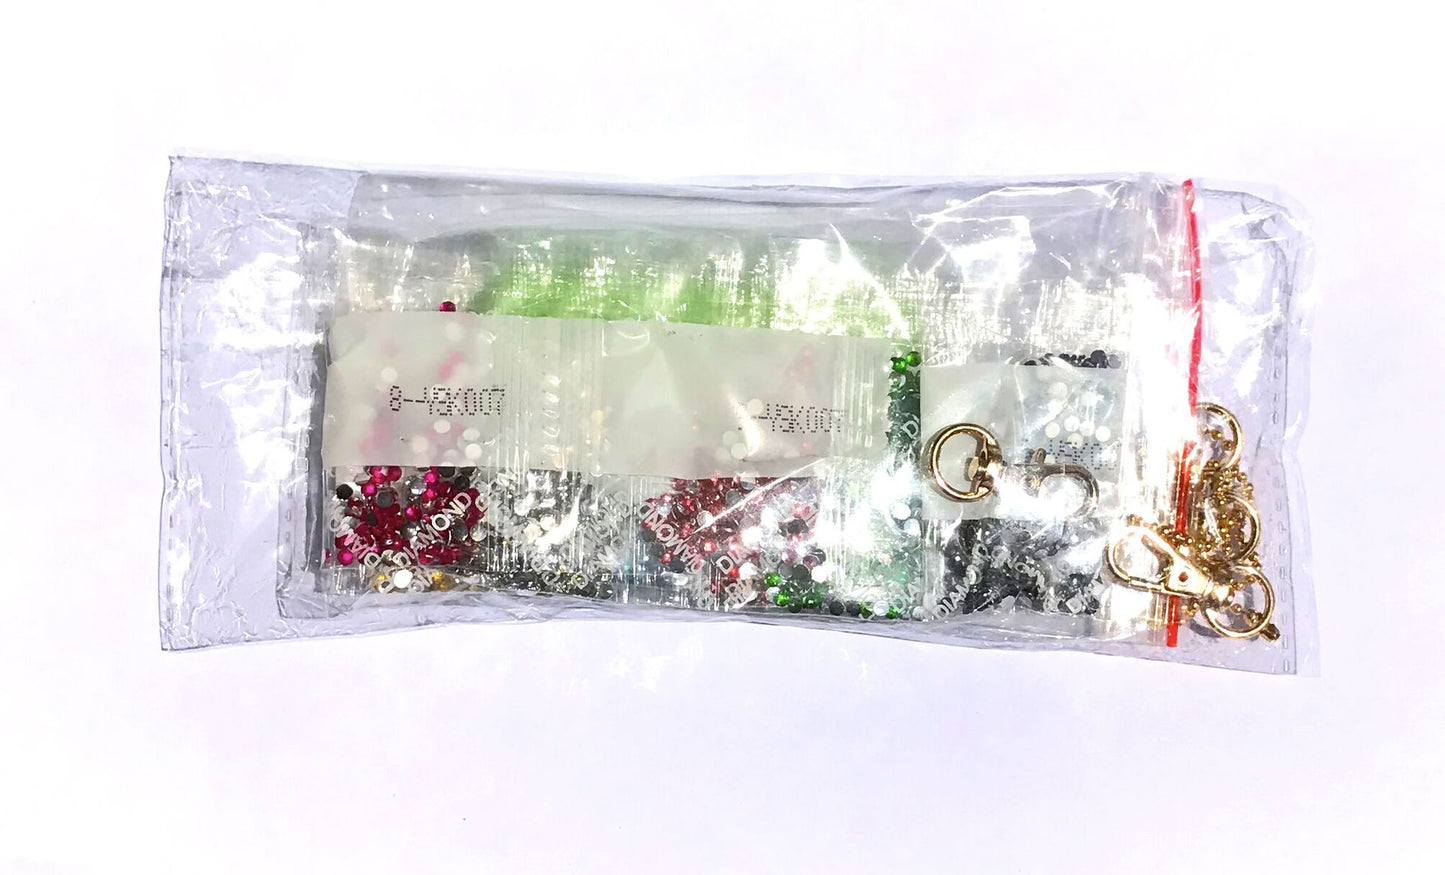 5pcs DIY Fruit Sets Special Shaped Full Drill Diamond Painting Schlüsselanhänger mit Schlüsselring Schmuck Geschenke für Mädchen Taschen 